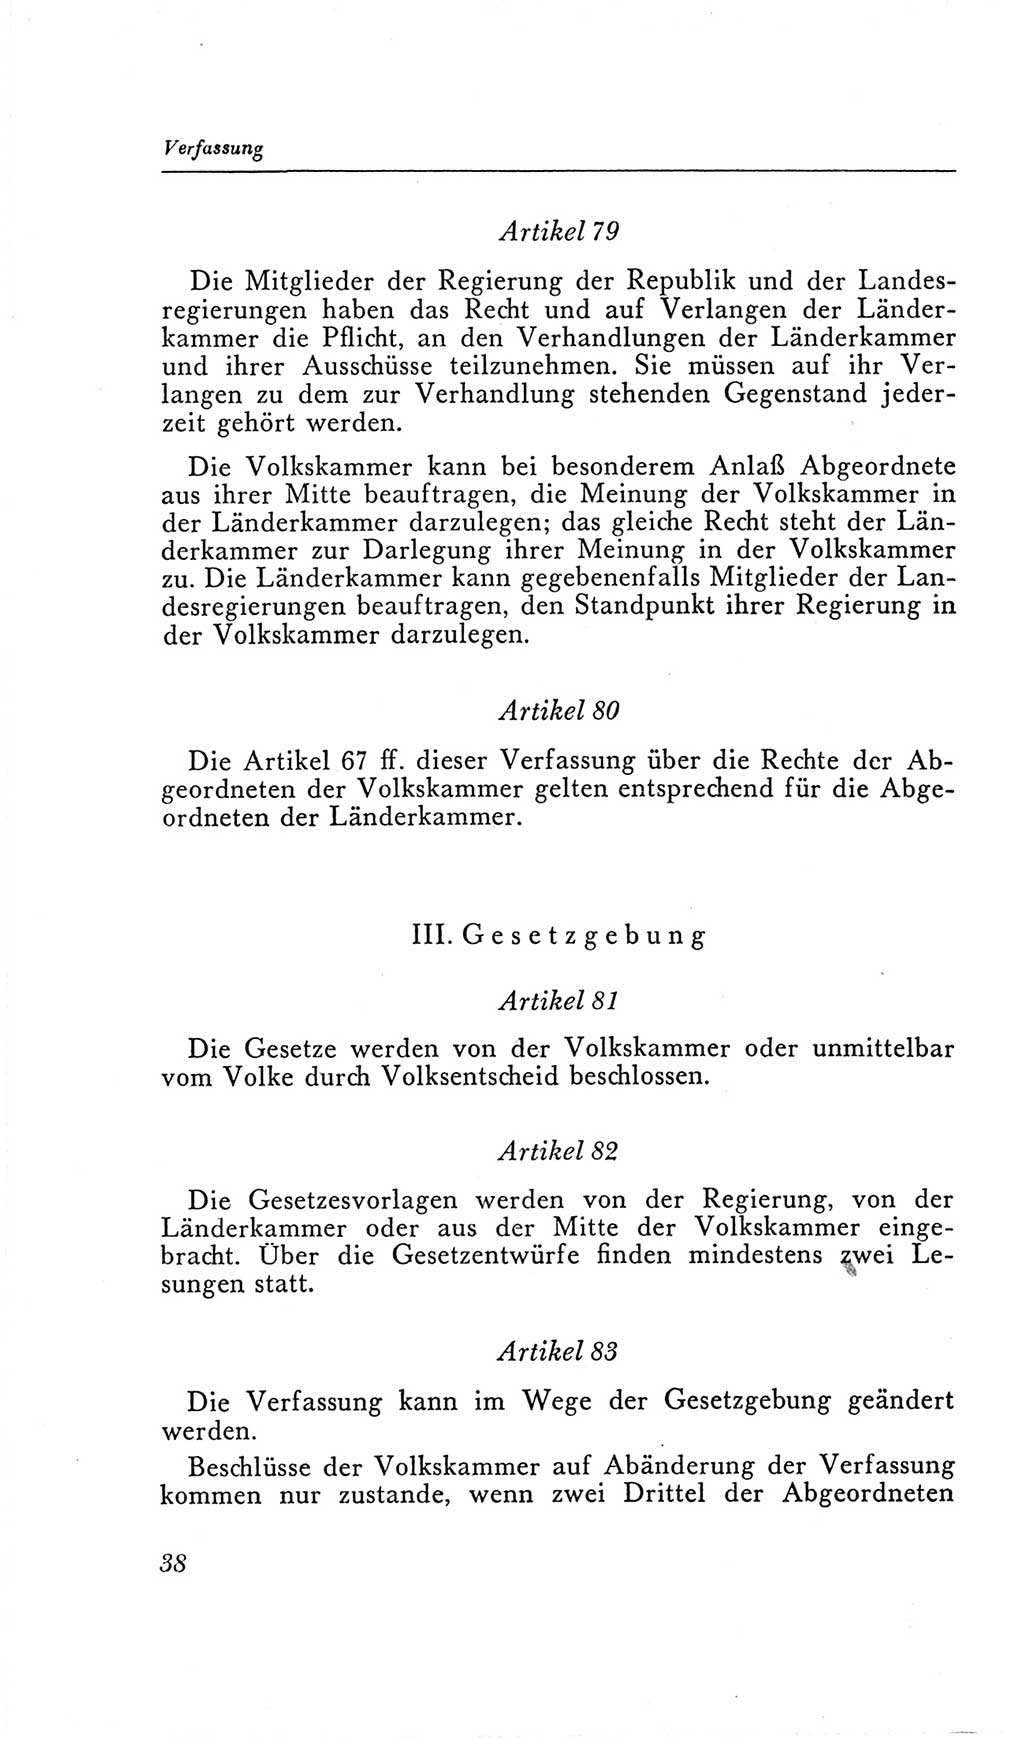 Handbuch der Volkskammer (VK) der Deutschen Demokratischen Republik (DDR), 2. Wahlperiode 1954-1958, Seite 38 (Hdb. VK. DDR, 2. WP. 1954-1958, S. 38)